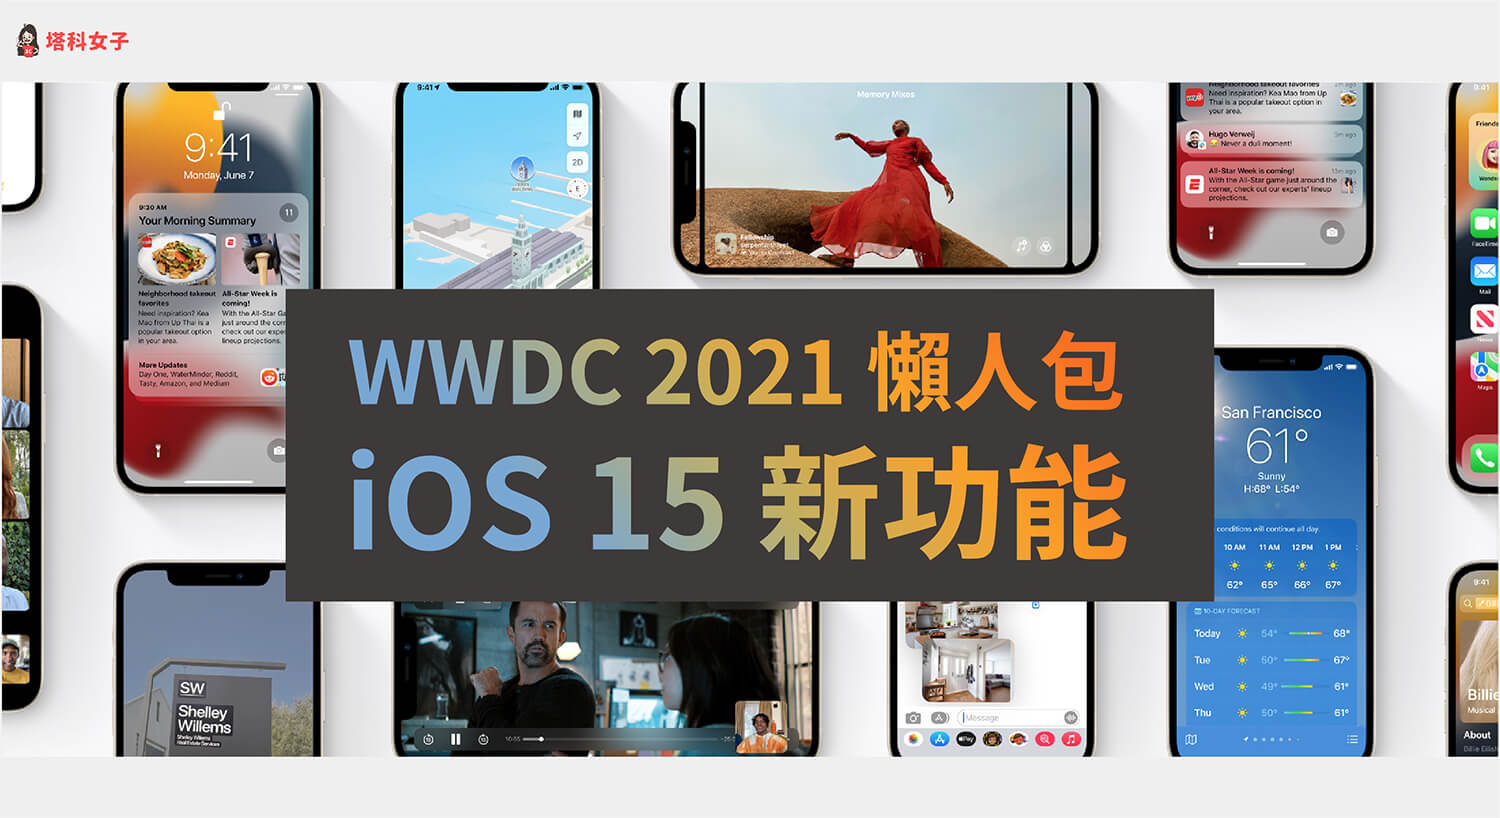 蘋果 WWDC 2021 / iOS 15 新功能：SharePlay、Live Text 圖片辨識、通知概覽、專注模式 - 2021 WWDC, Apple, iOS 15, iOS 15 新功能, iOS15, WWDC - 塔科女子